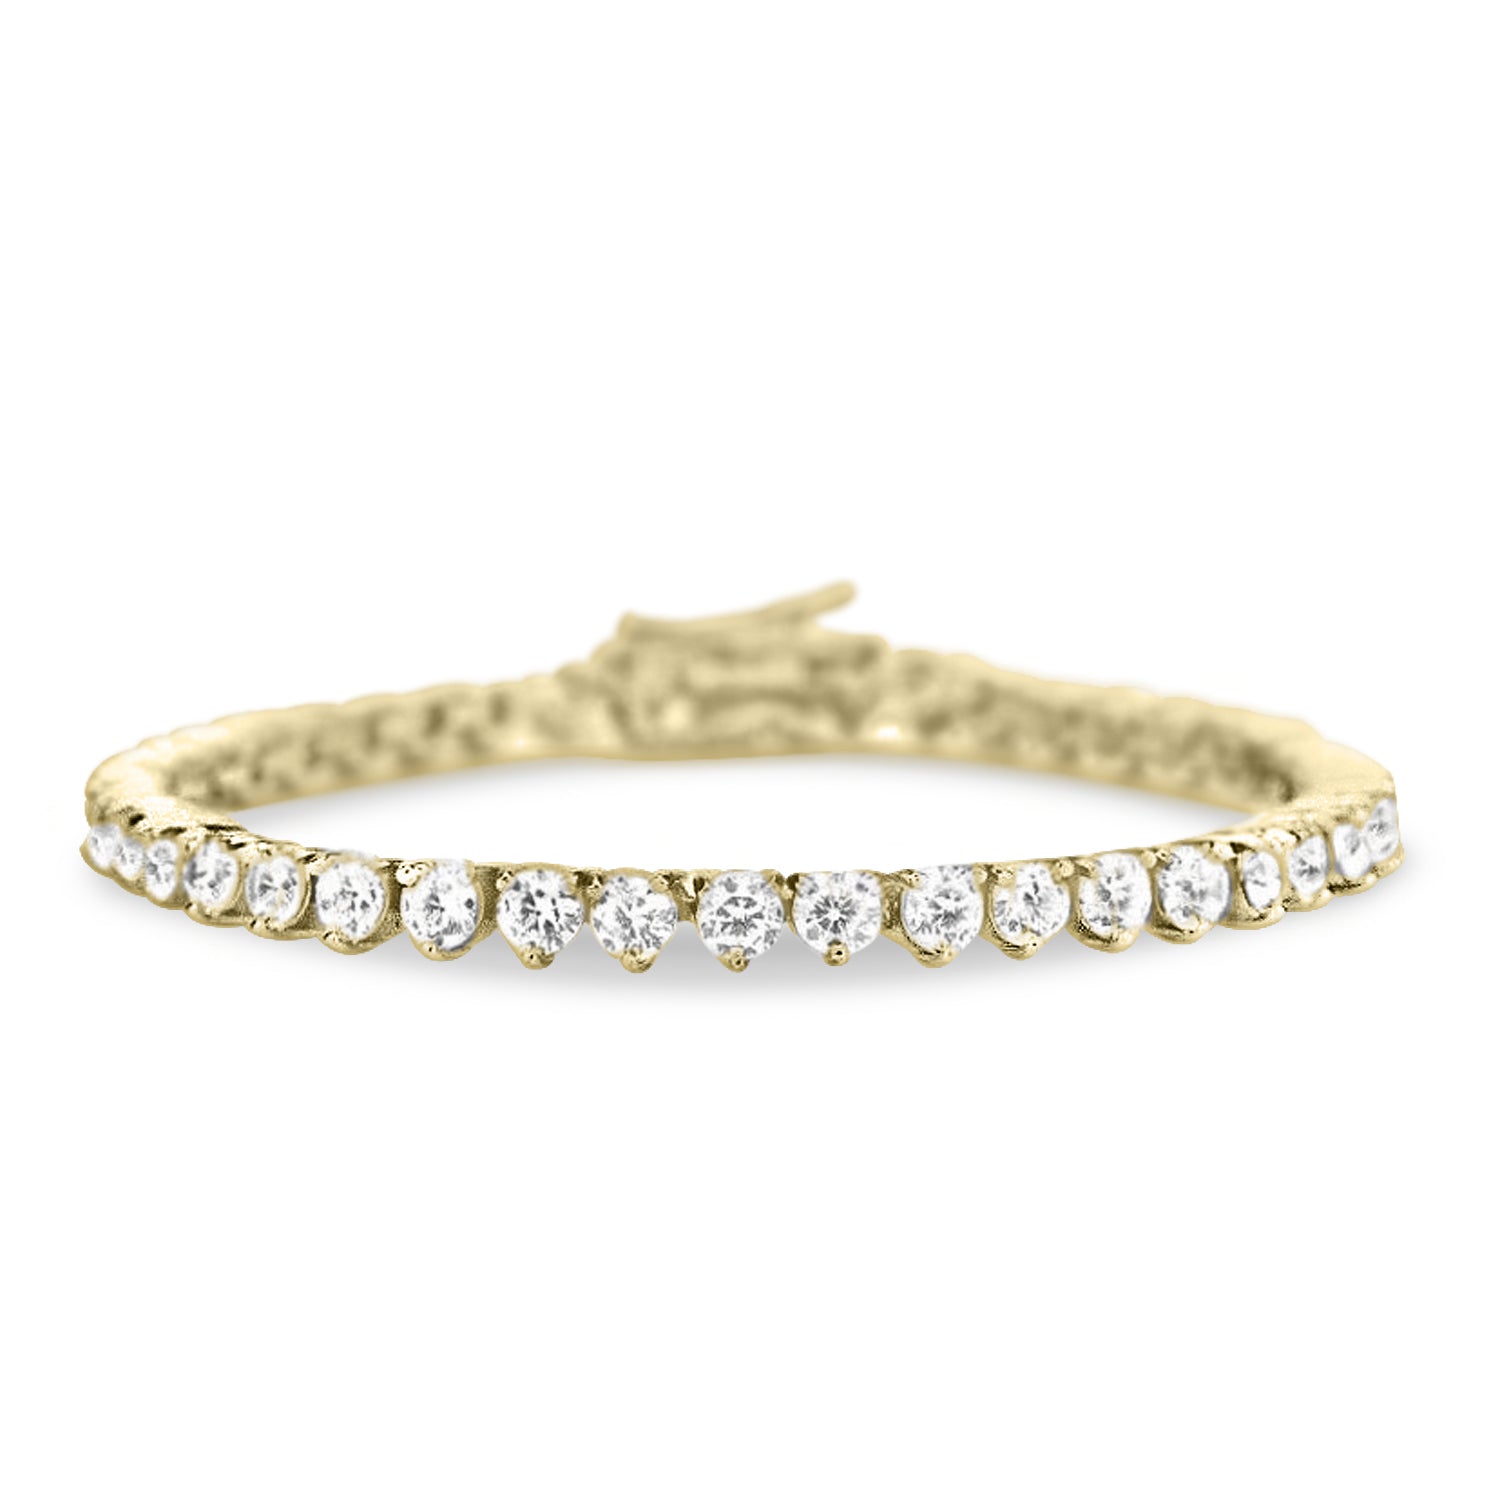 Vivere 3 Prong Diamond Bracelet in 18k Gold Vermeil